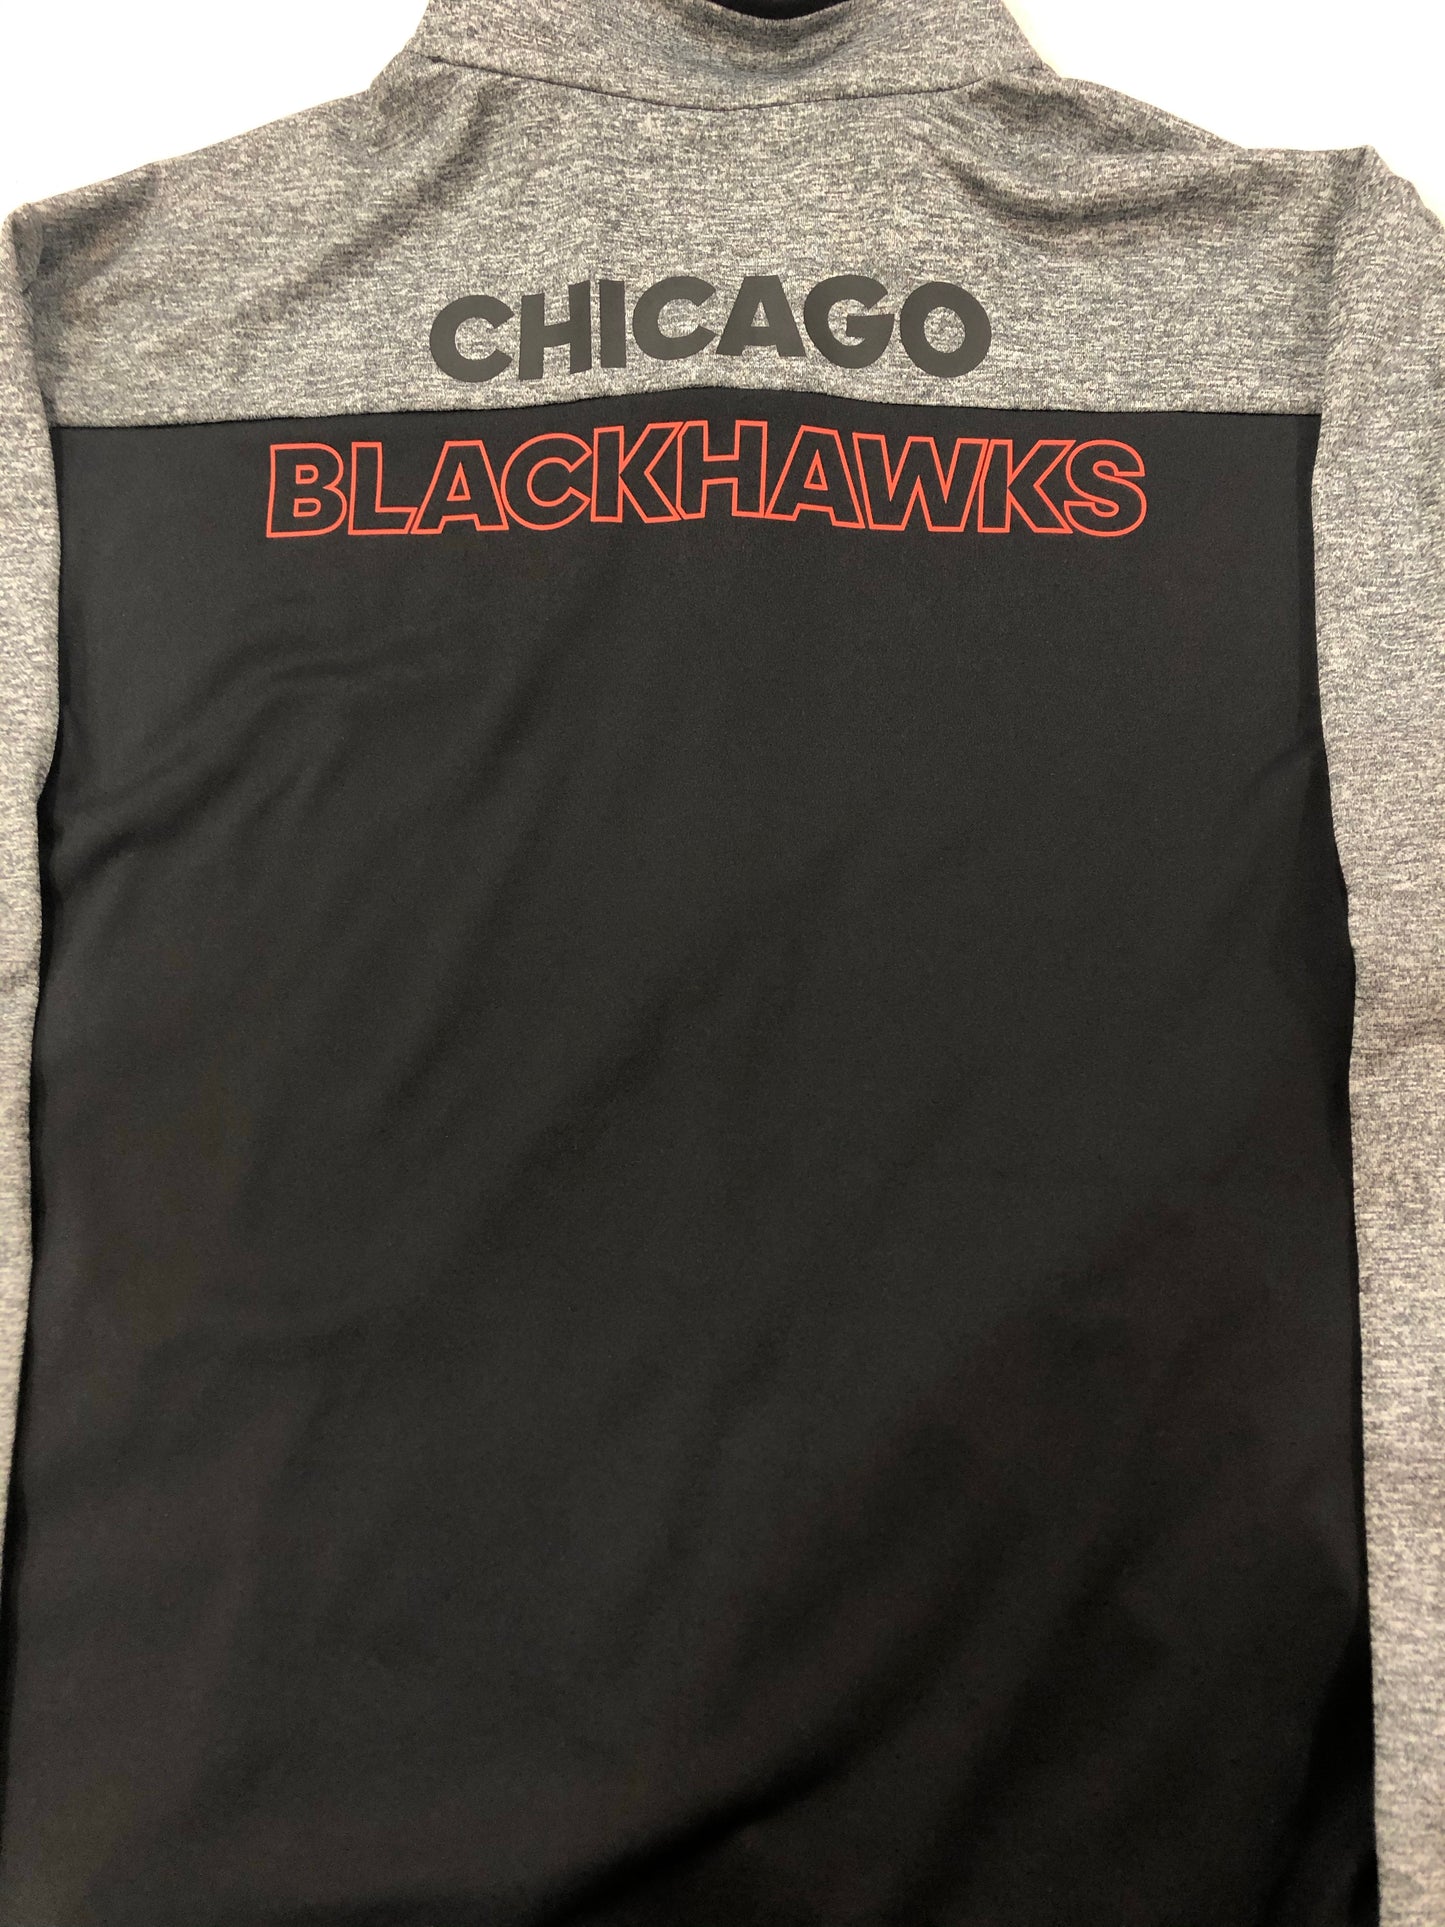 Men’s Adidas Chicago Blackhawks Finished Goods Full Zip Track Jacket